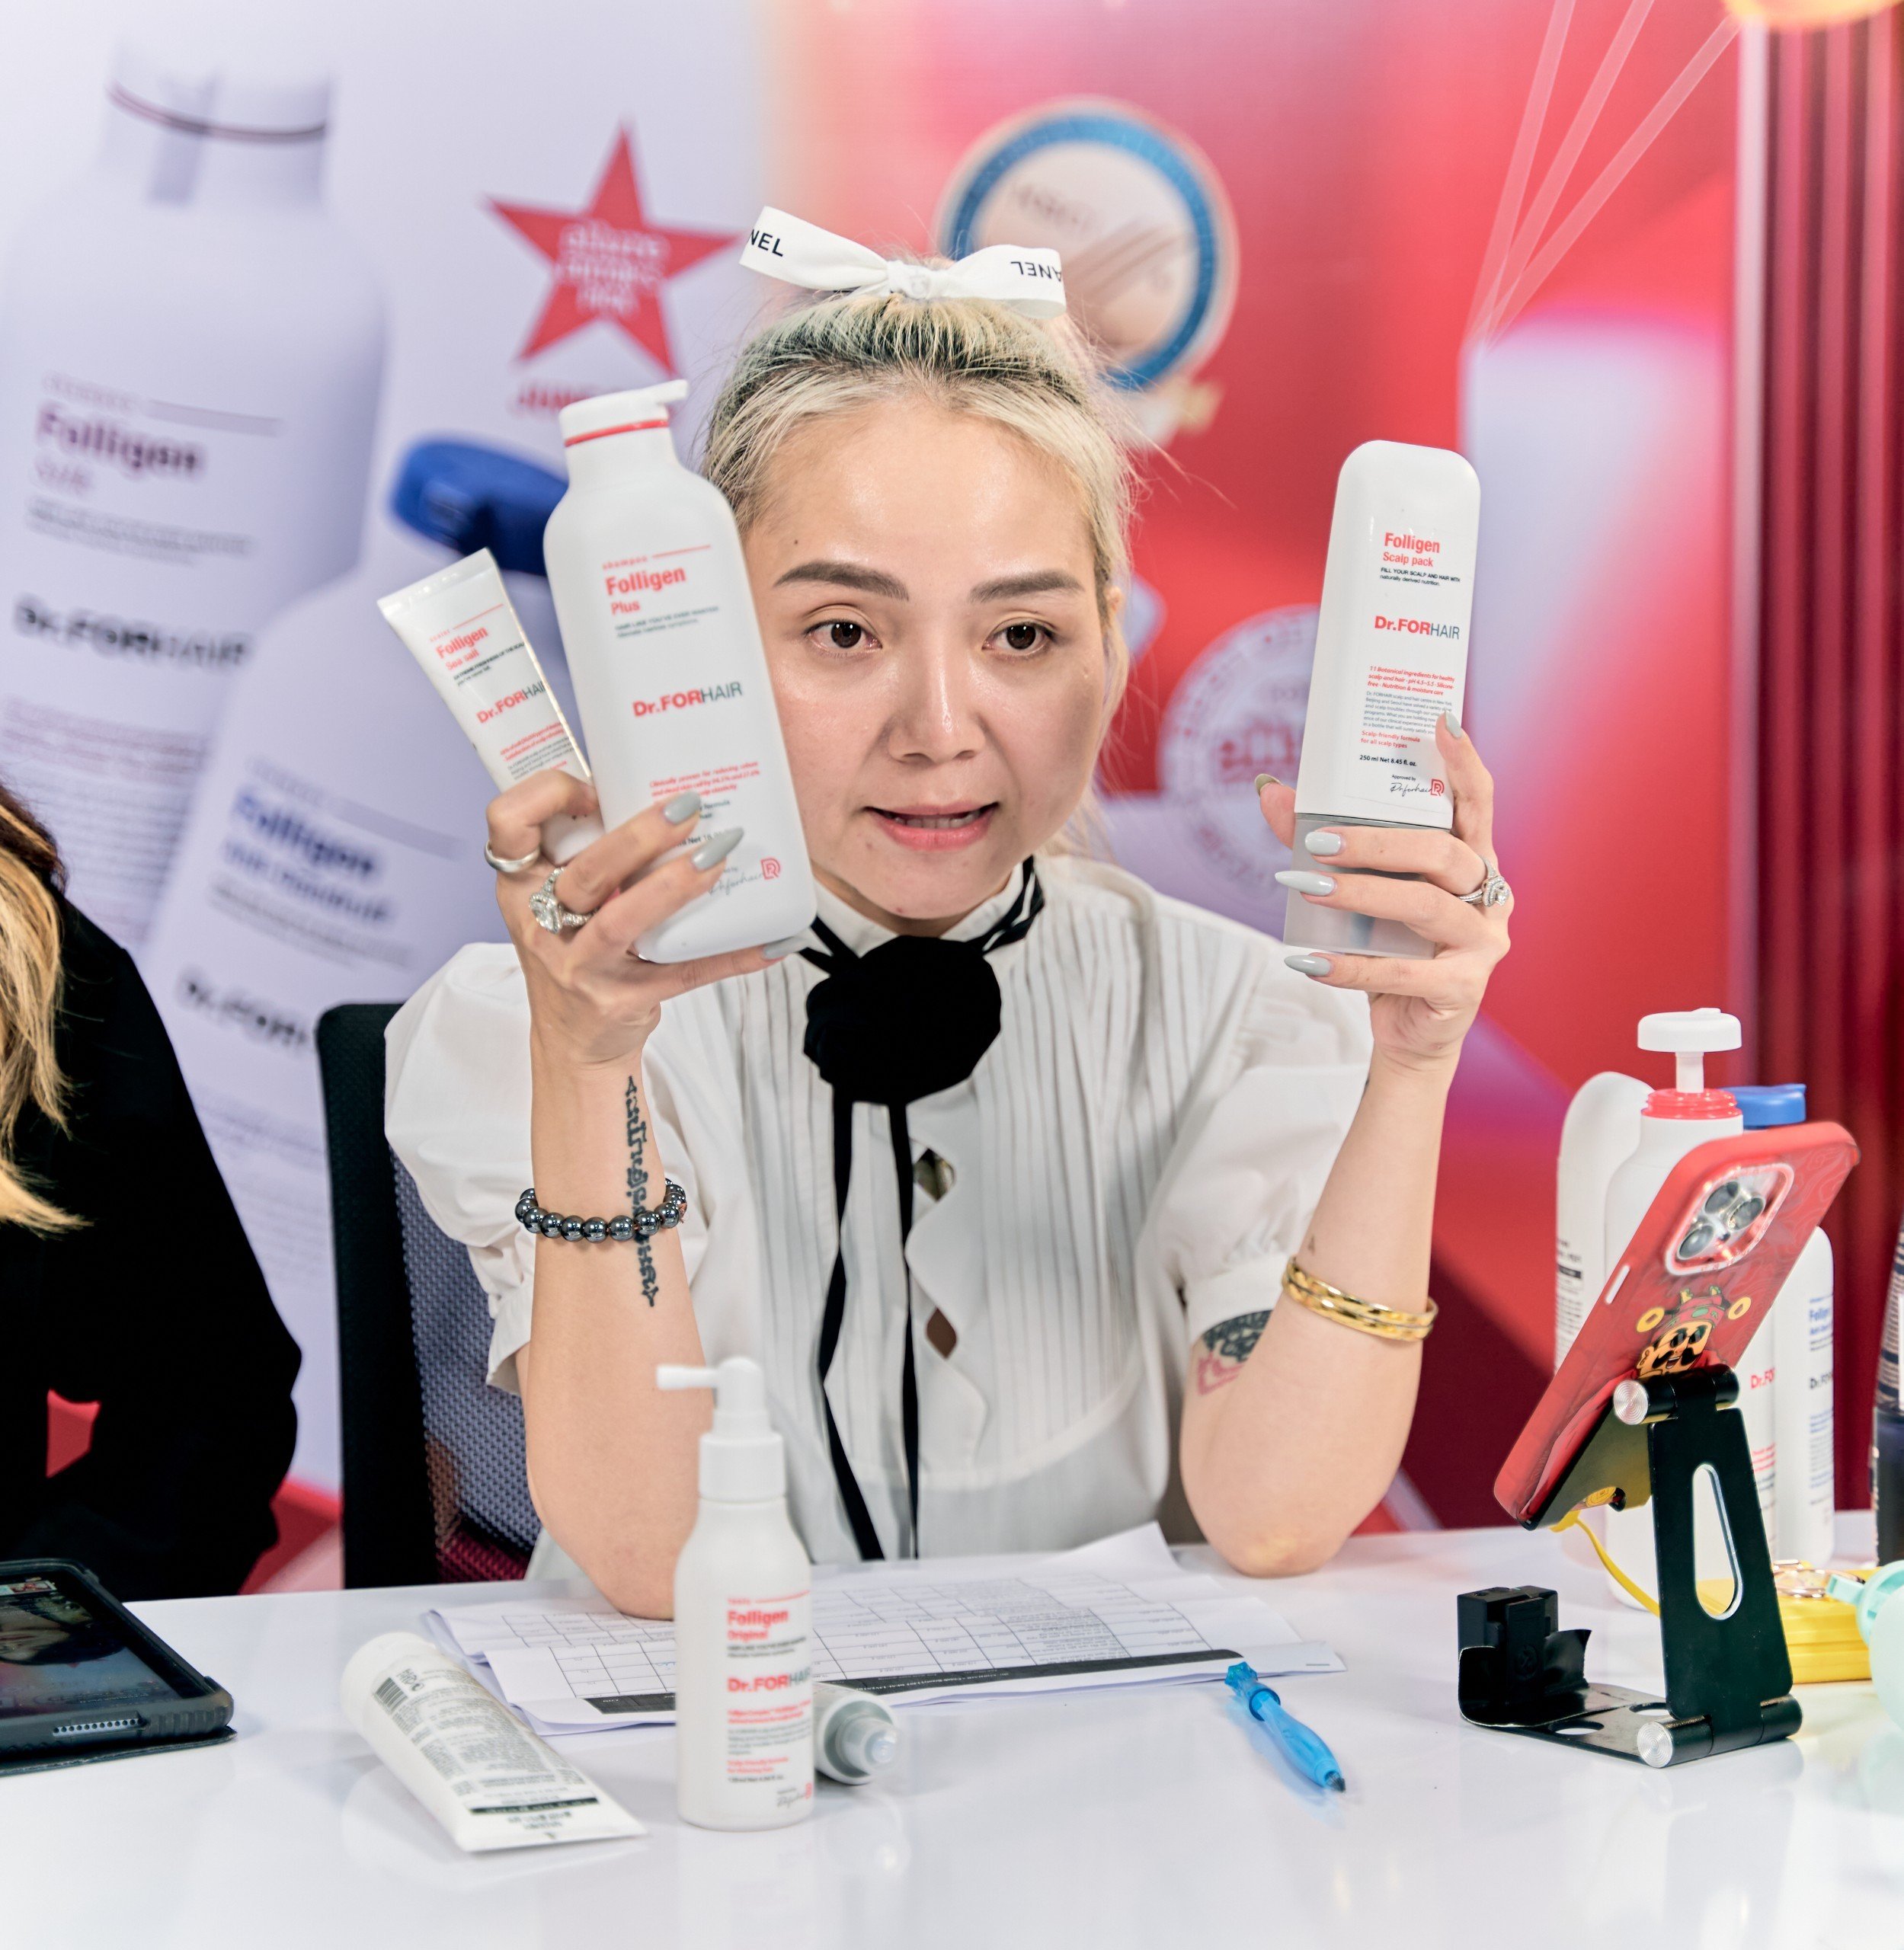 Beauty Blogger Kim Xuyến của Chảnh Beauty đã tự trải nghiệm sản phẩm và công nhận dầu gội của Dr.FORHAIR hiệu quả và an toàn với mọi loại da đầu.